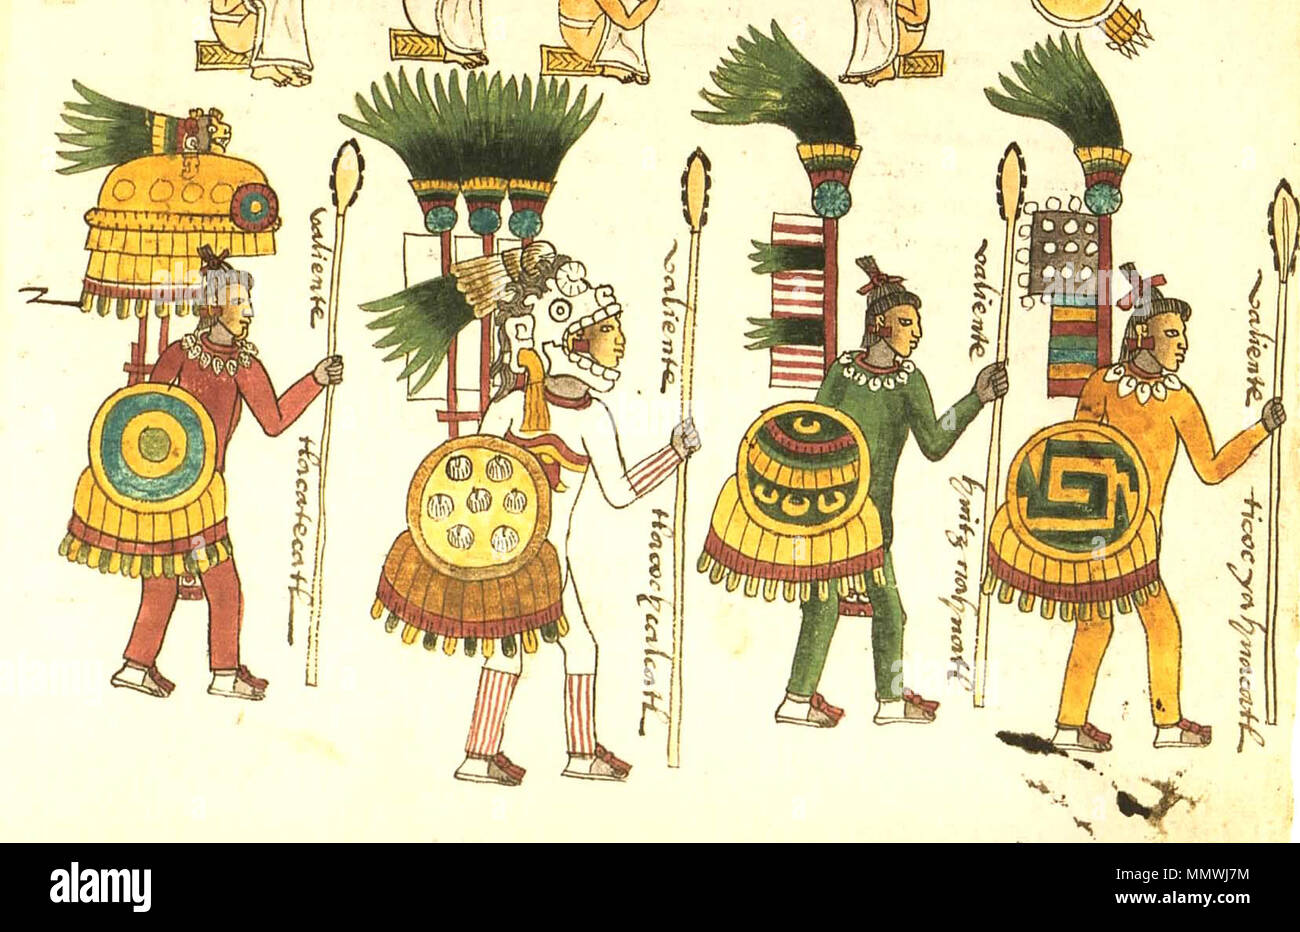 . Englisch: aztekischen Krieger. Sechs unterschiedliche Ebenen der militärischen Leistung sind im Codex Mendoza für junge Männer, die bestimmt sind, Priester zu werden dargestellt. Die erste ist ein Anfänger, der Capture gehabt hat. Er trägt eine einfache Rüstung ichcahuipilli oder gesteppte Jacke. Diejenigen, die hatte zwei erfasst wurden, eine weiße Feder verziert tlahuiztli, ein straff am Körper passen ausgezeichnet. Eine dritte Aufnahme berechtigt, die Krieger - Priester zu einem Verschleiß eine grüne tlahuiztli. Eine vierte Aufnahme berechtigt einen Priester eine bemerkenswerte schwarze und weiße konische hat aus dem Huaxtec Menschen von Veracruz angenommen zu tragen. Die weißen Punkte und swi Stockfoto